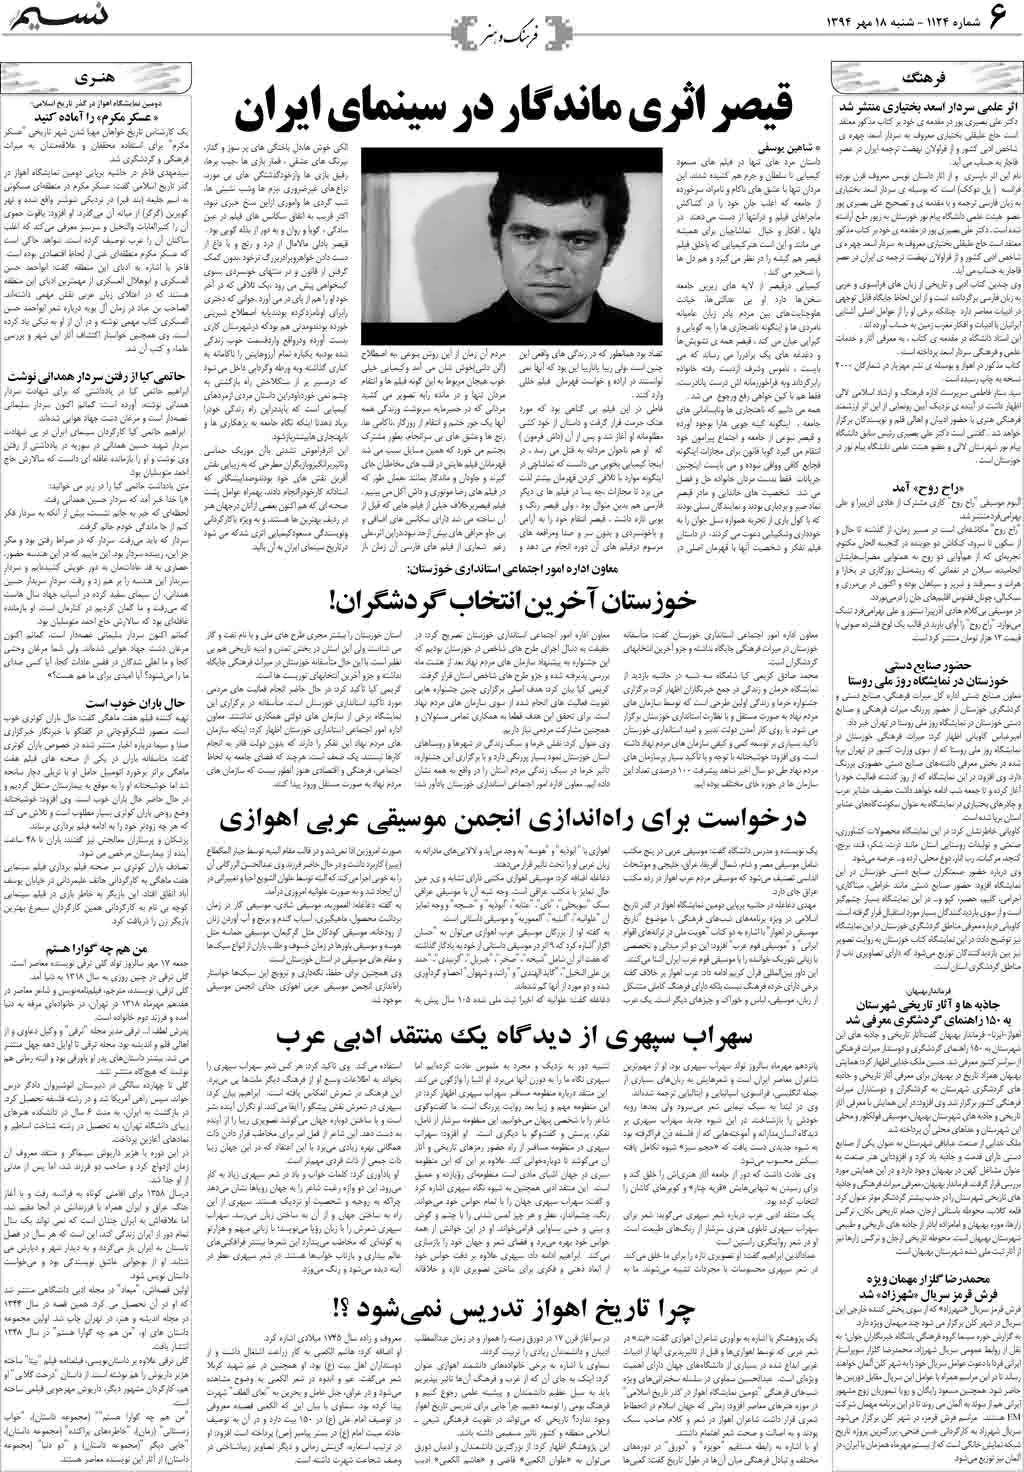 صفحه فرهنگ و هنر روزنامه نسیم شماره 1124